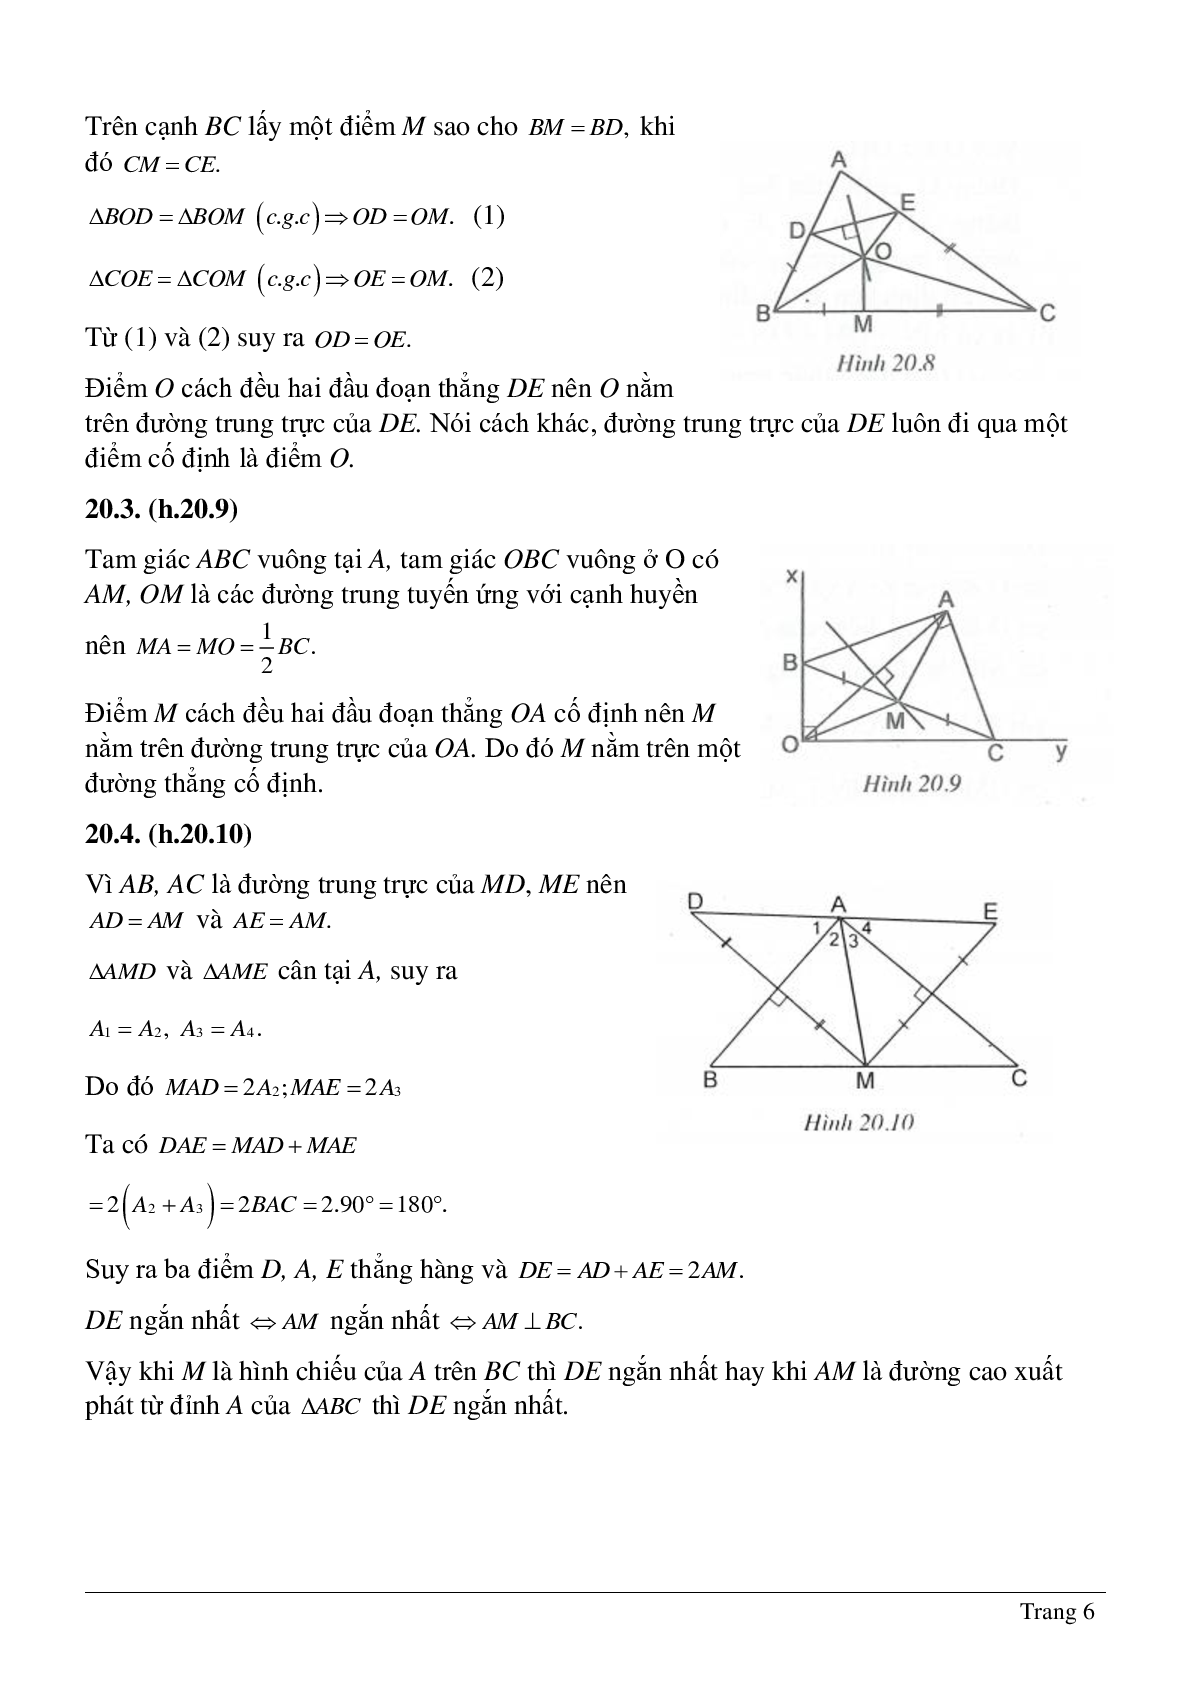 Tổng hợp những bài tập về Tính chất ba đường trung trực, ba đường cao của tam giác có lời giải (trang 6)